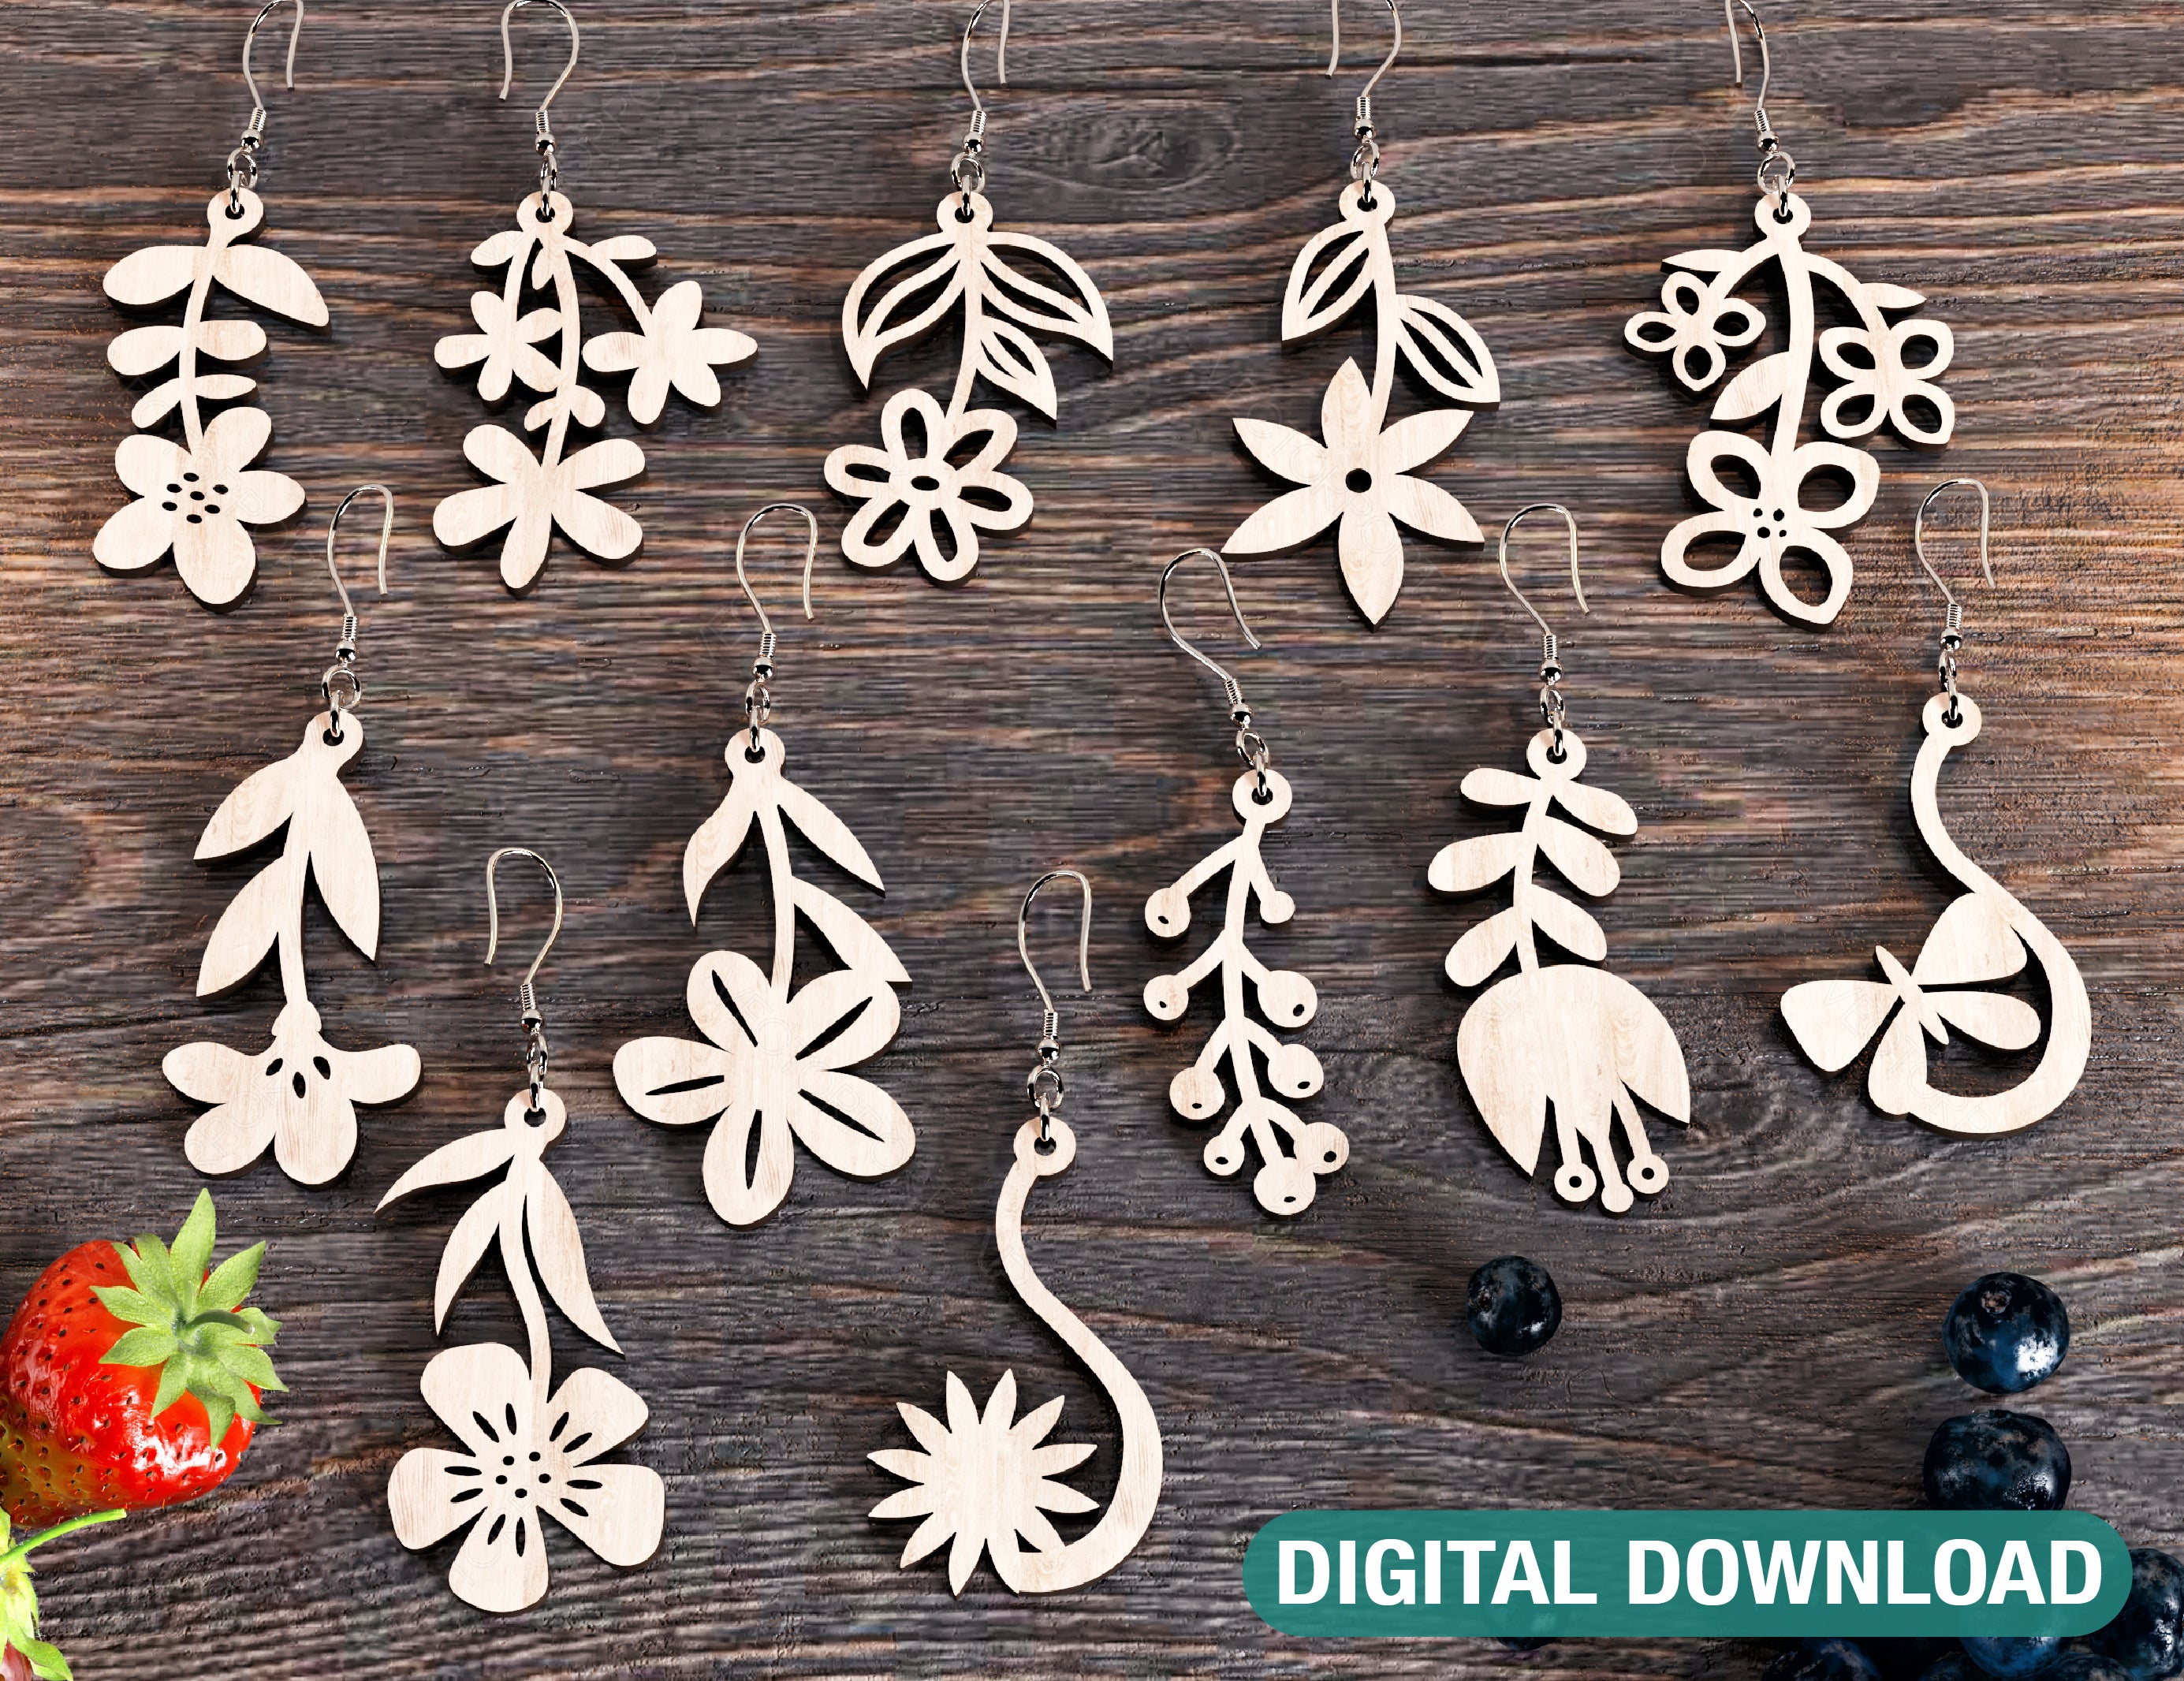 Flowers shape Earring Bundle Svg Jewelry Pendants earring laser cut Cut Files Digital Download |#U249|